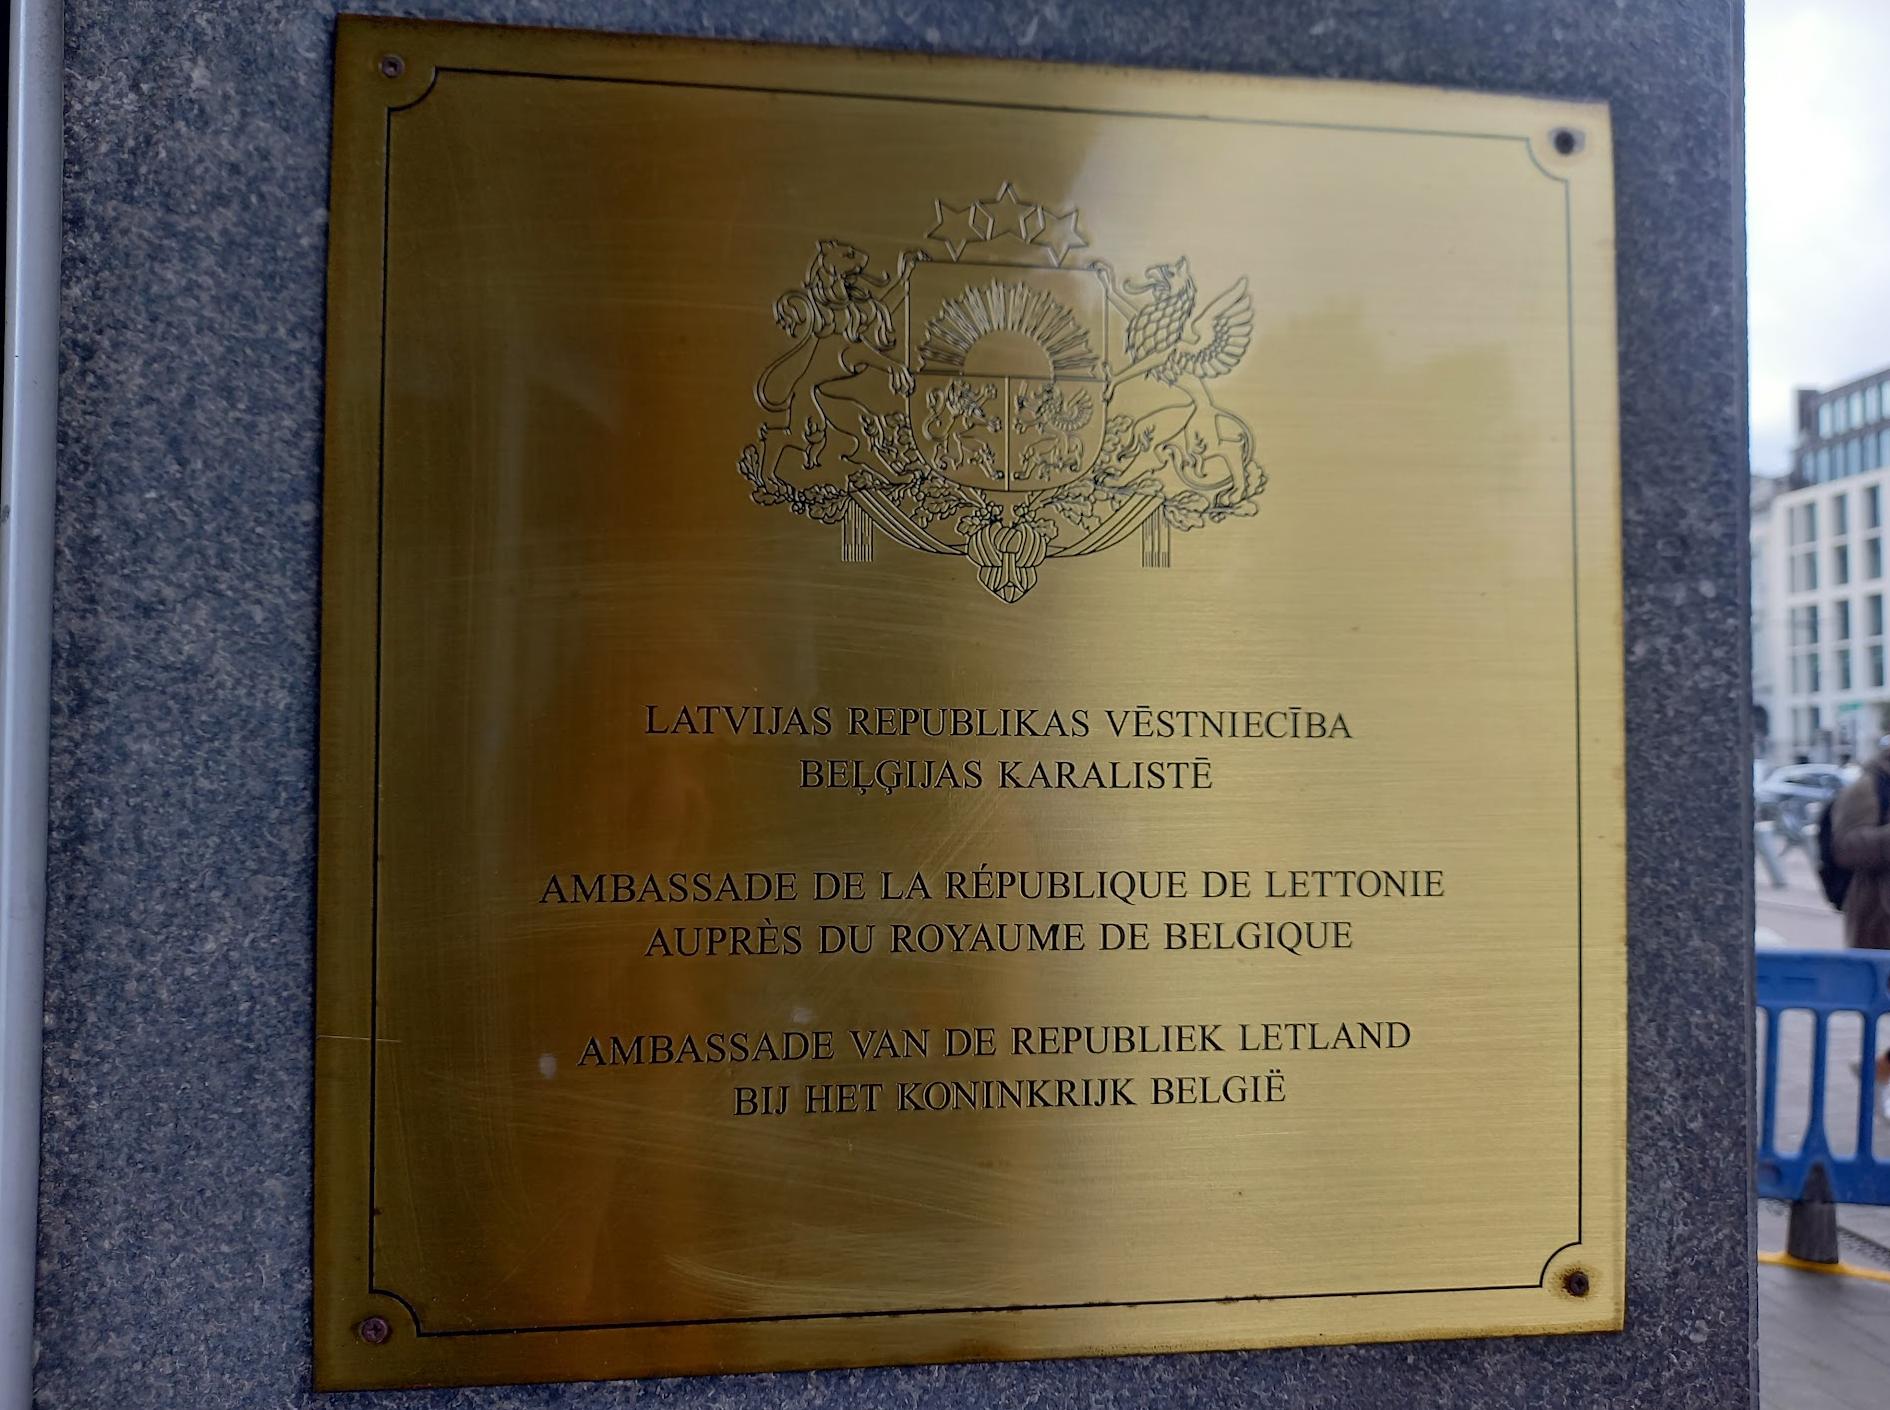 Letonya'nın Brüksel Büyükelçiliği